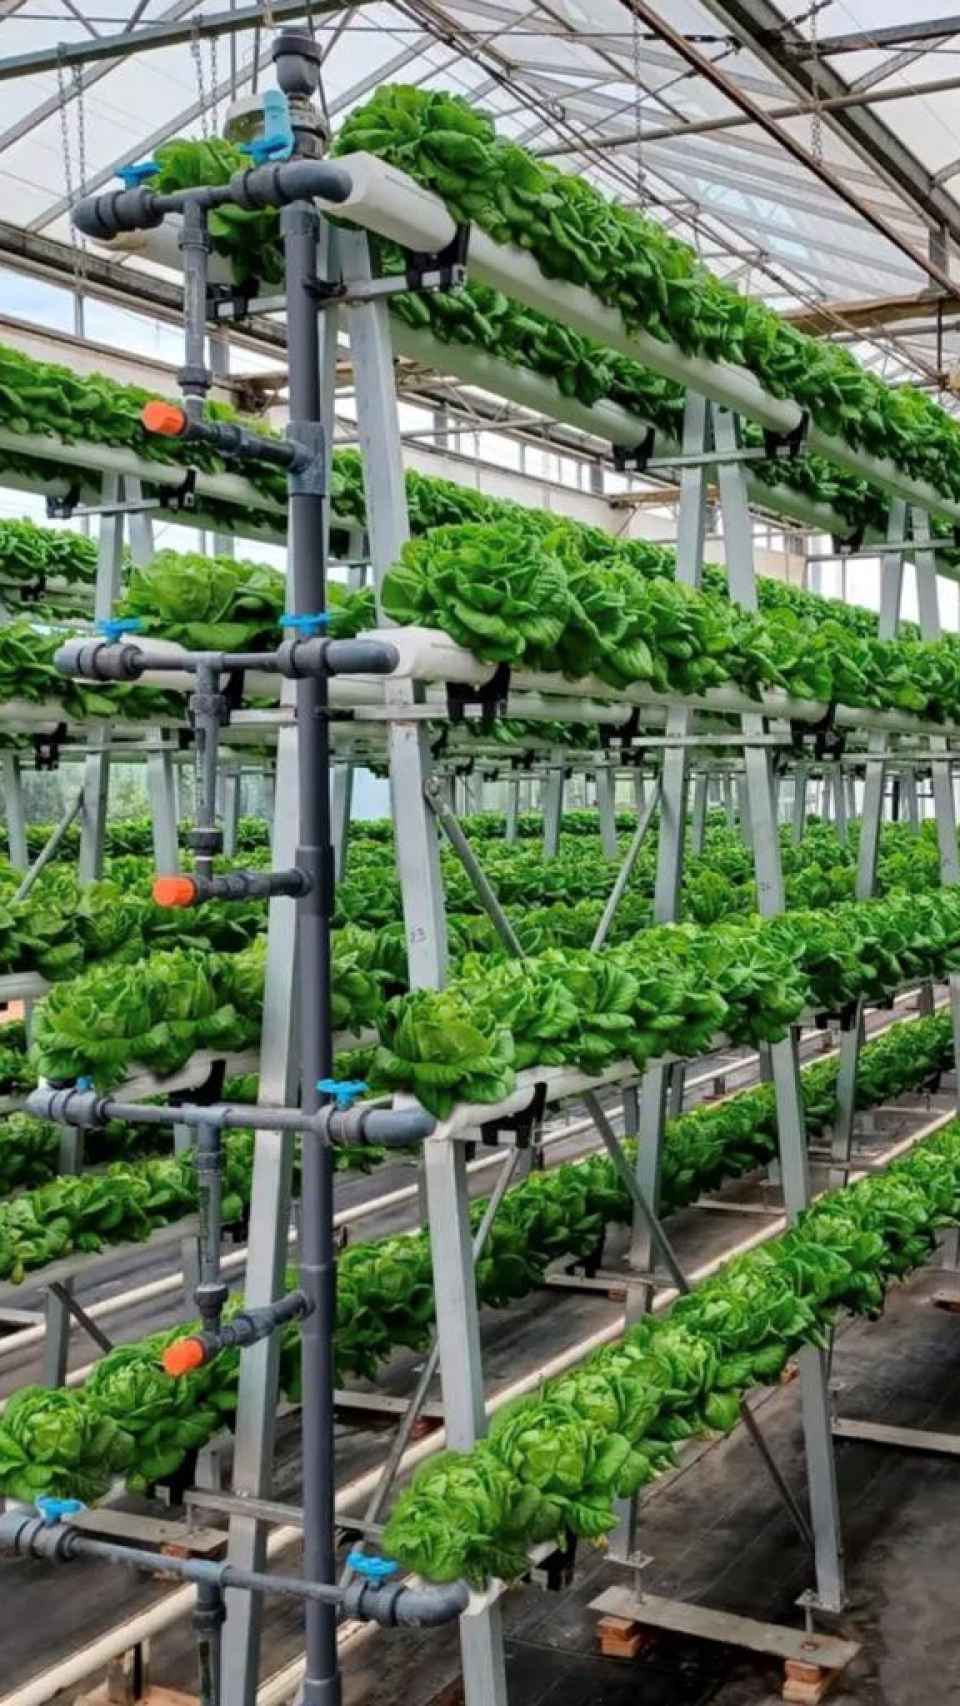 Un ejemplo de agricultura vertical: tecnología para ganar espacio en altura y aumentar producción por unidad de superficie.